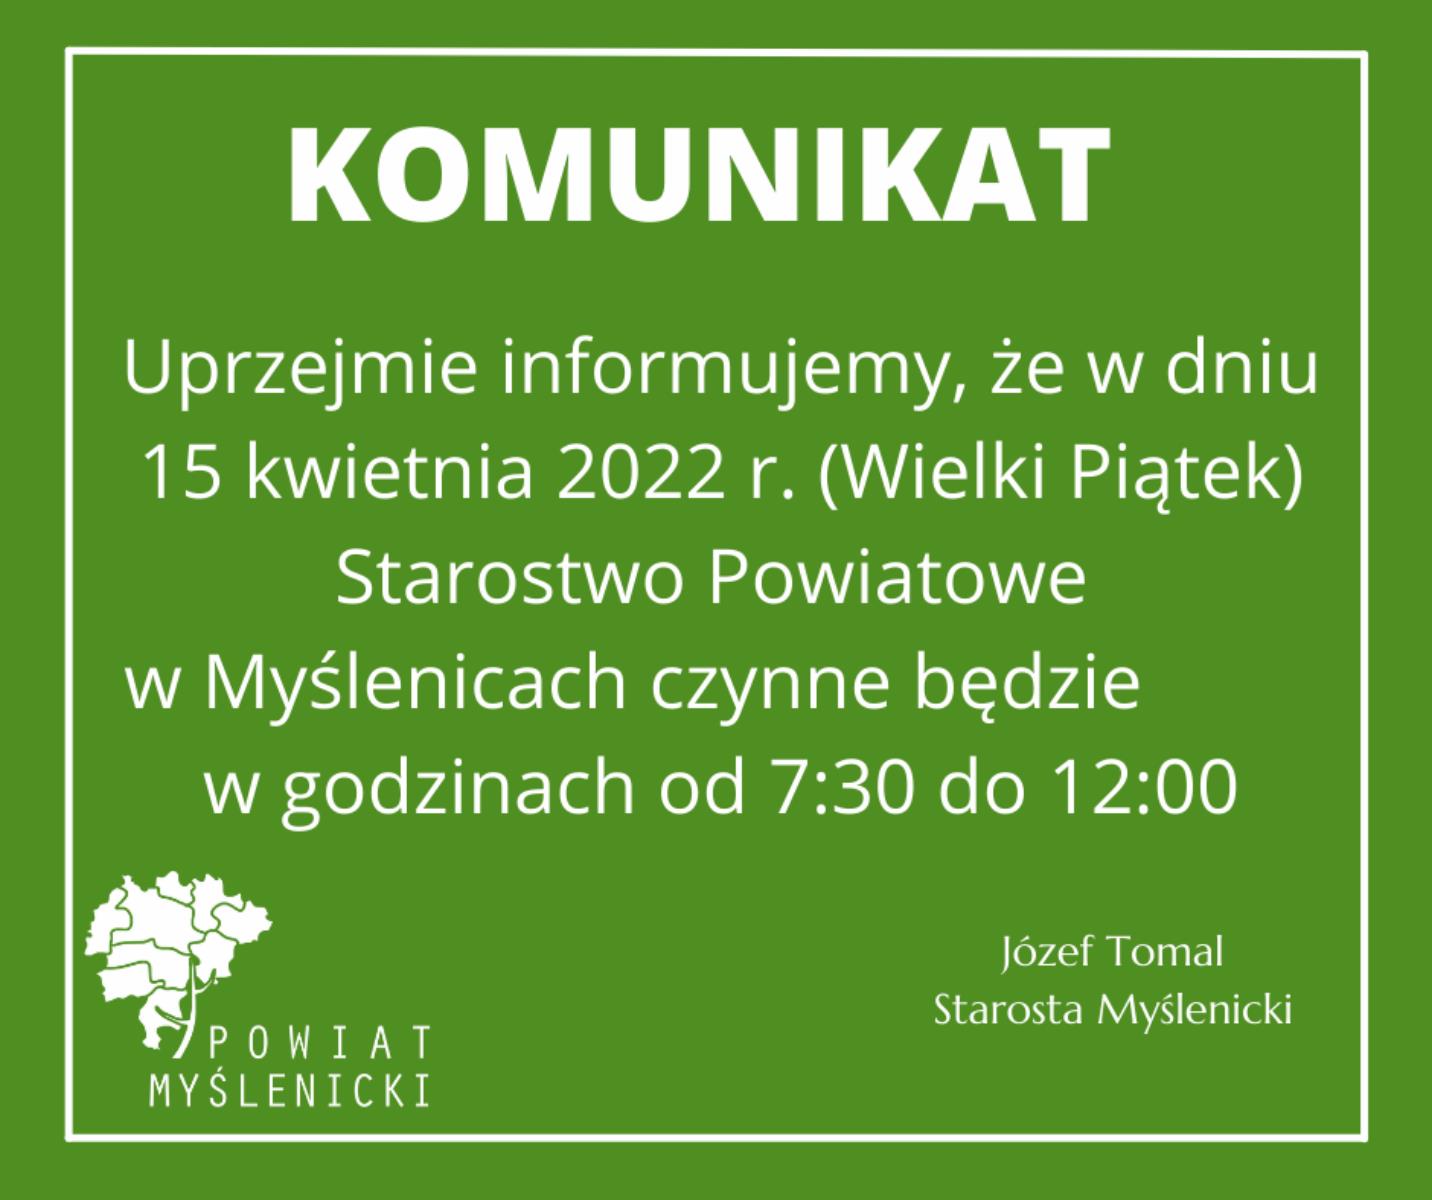 Informacja w sprawie godzin pracy urzędu w dniu 15.04.2022 r.